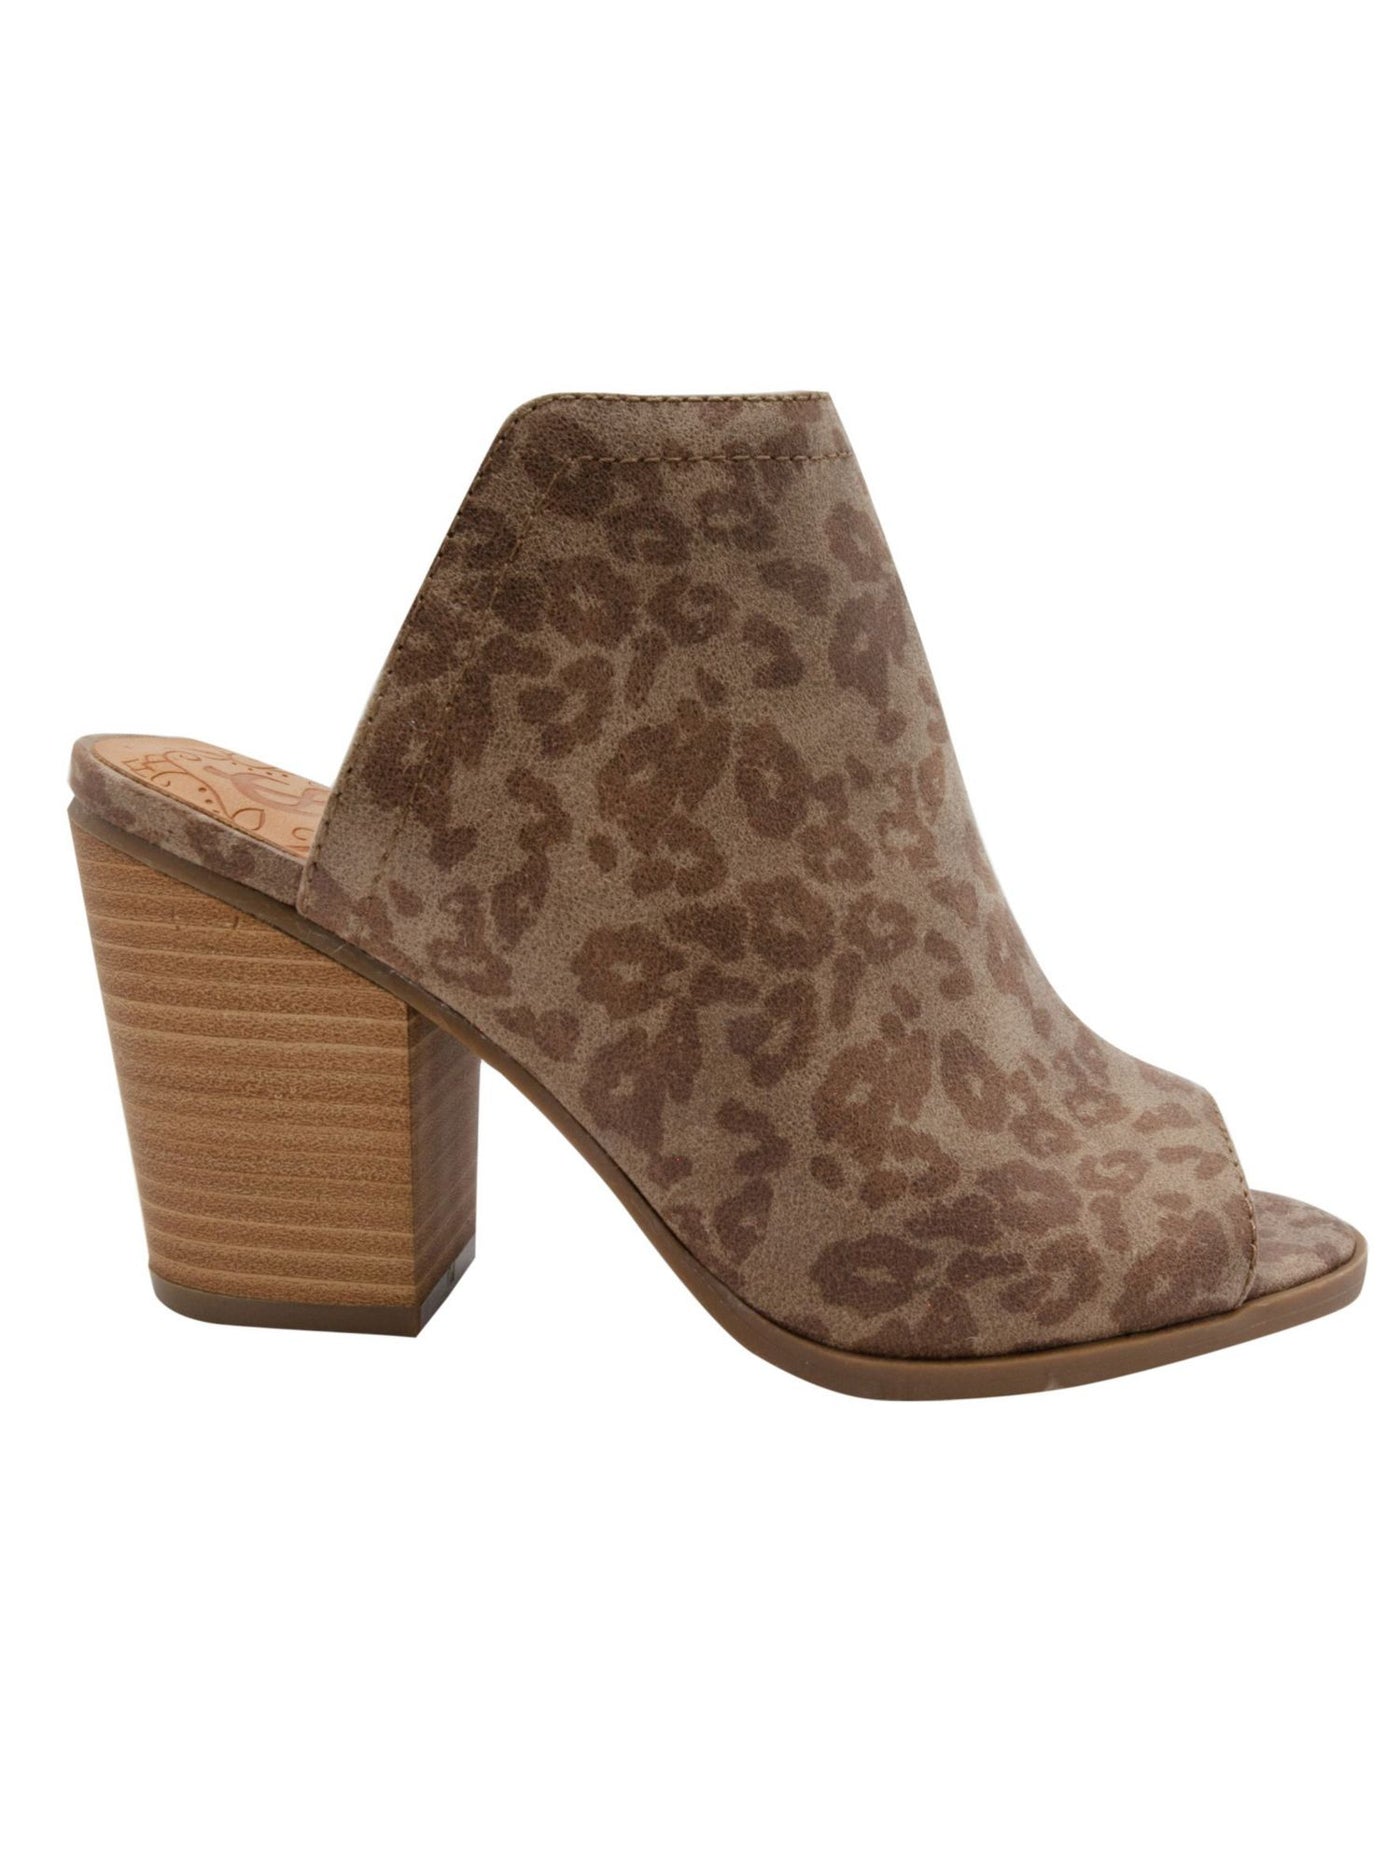 SUGAR Womens Brown Animal Print Peppermint Peep Toe Block Heel Slip On Dress Heeled Mules Shoes 9.5